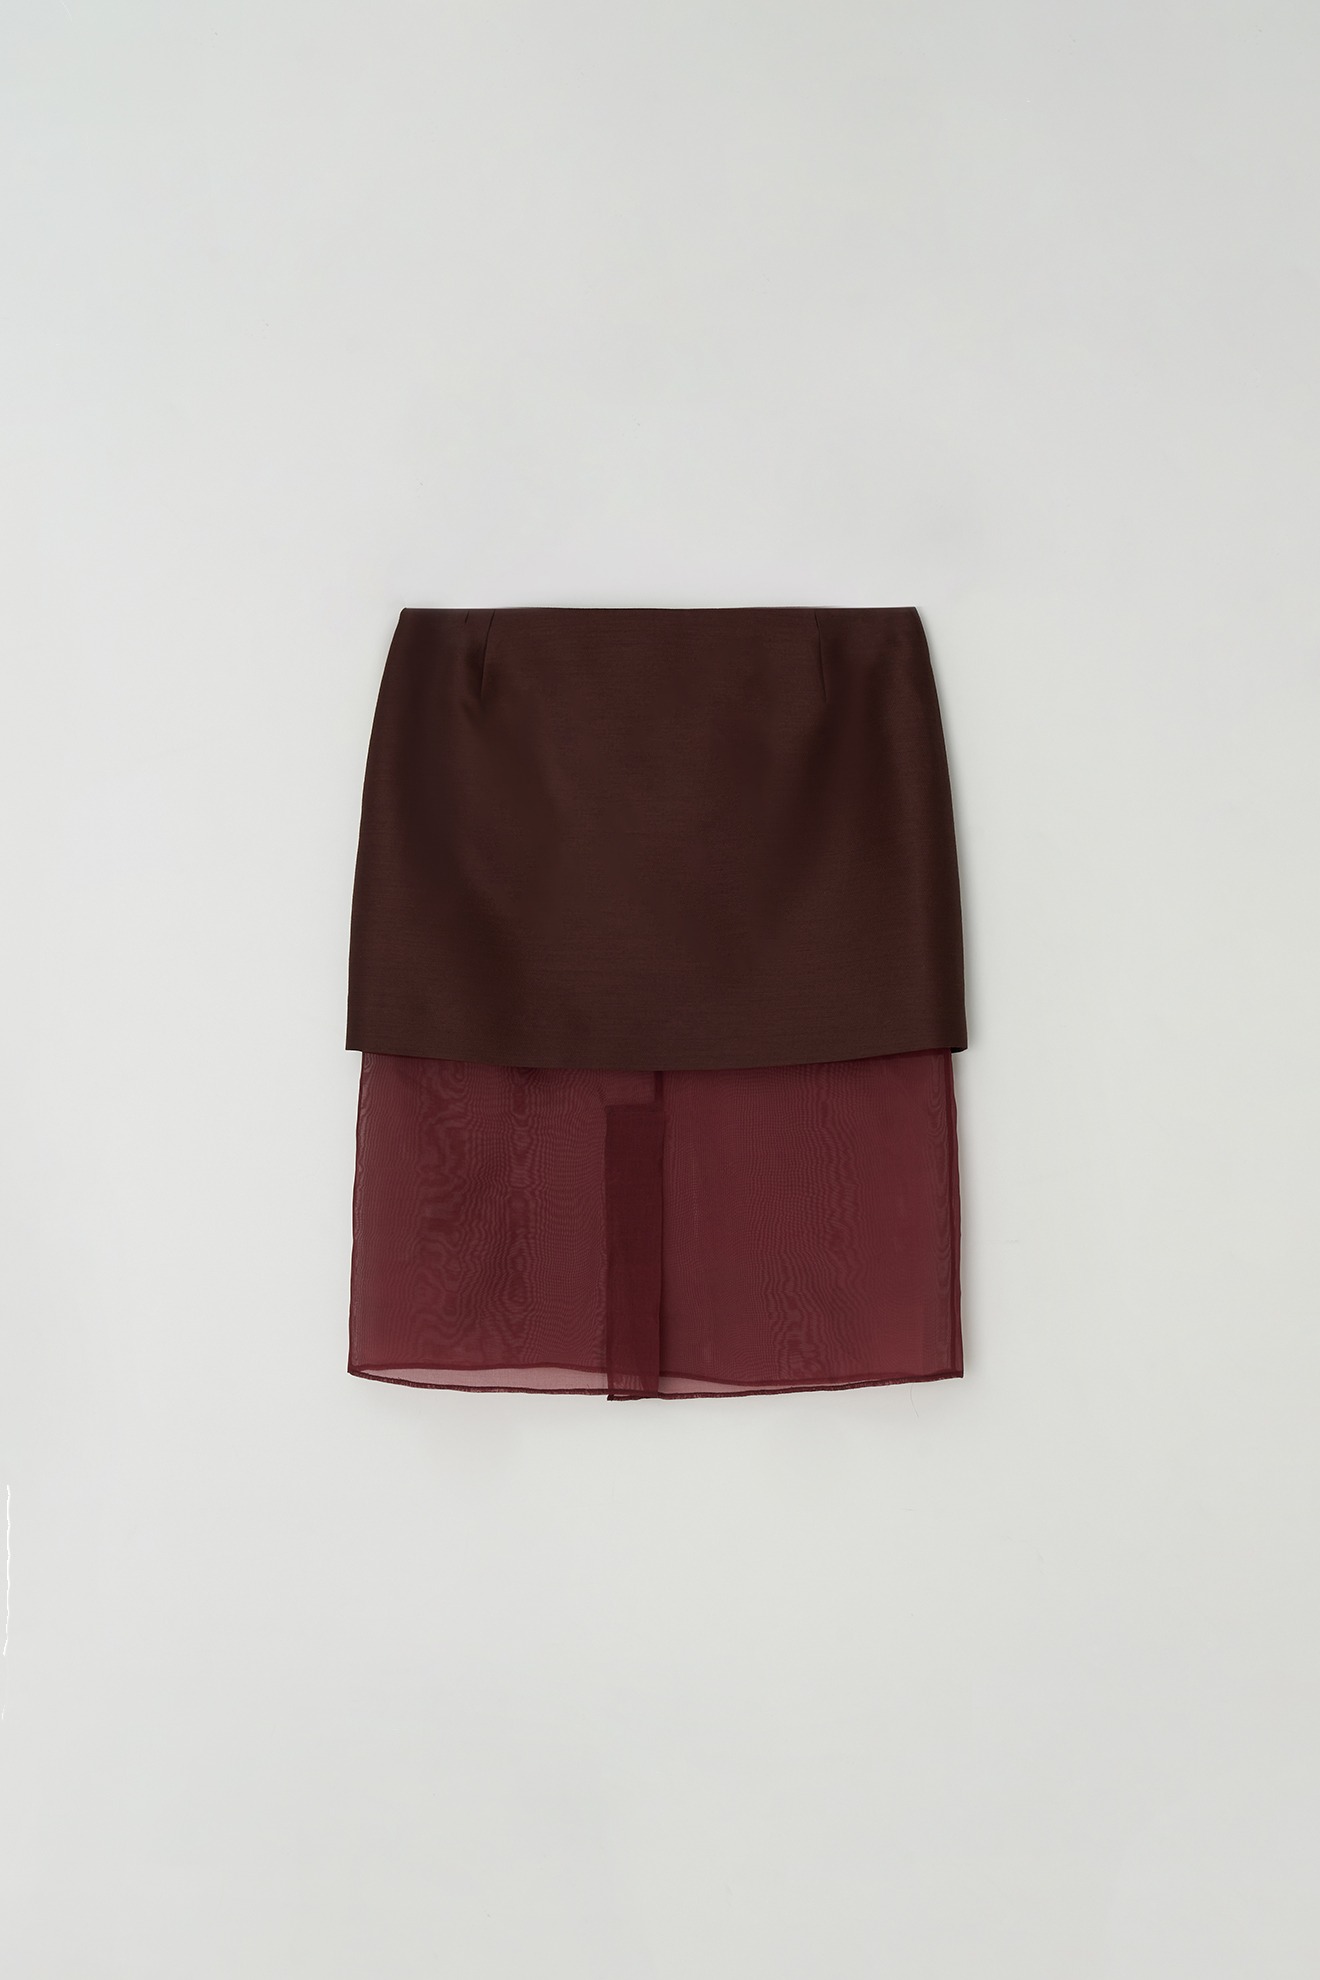 Organza Mini Skirt (wine)